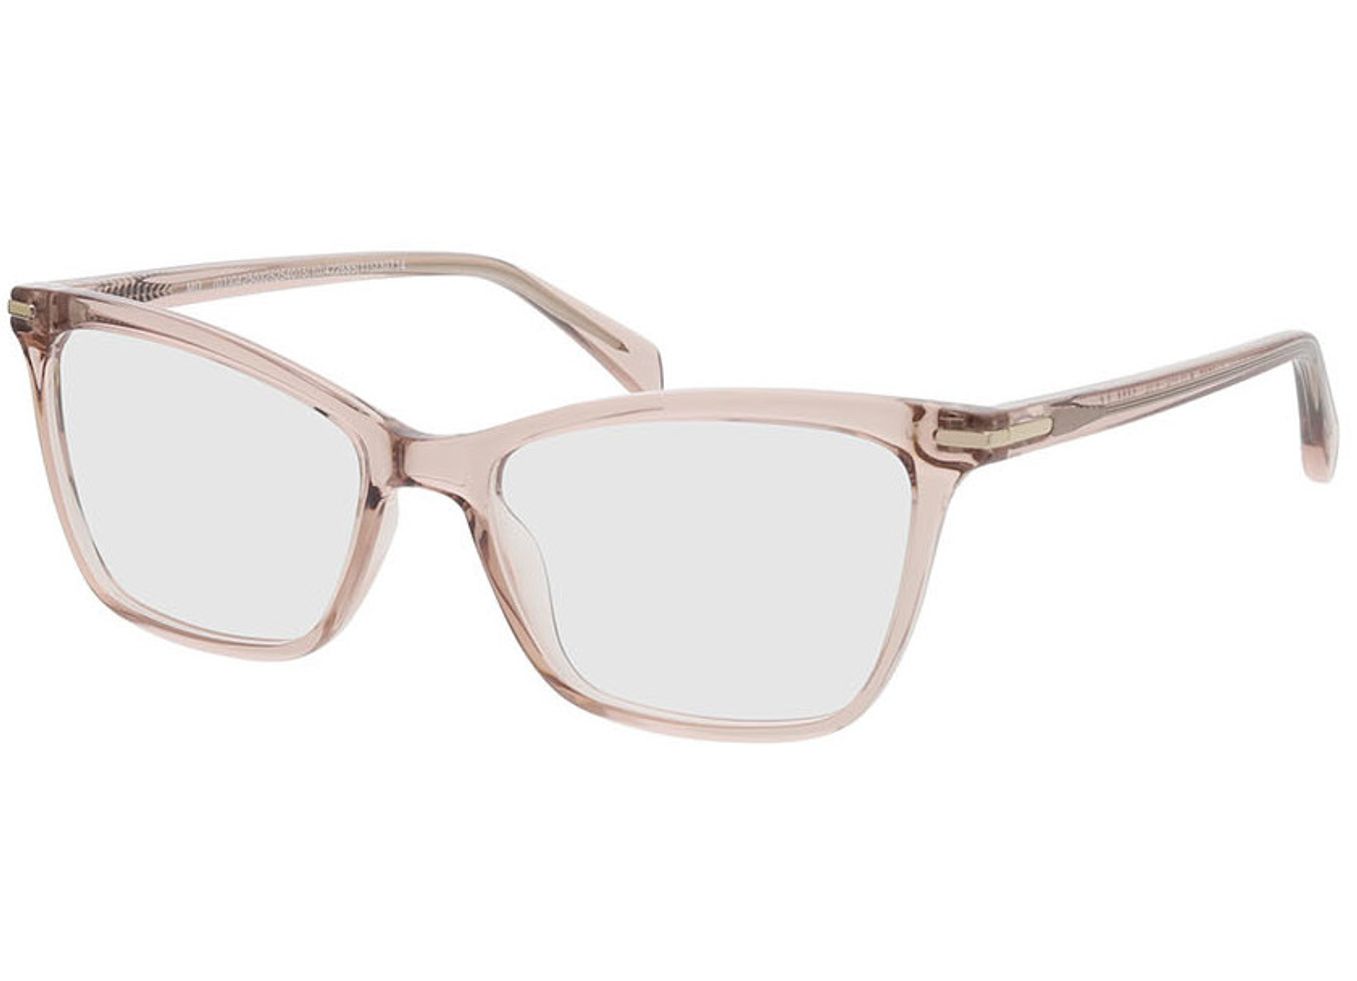 Aurora - beige Gleitsichtbrille, Vollrand, Cateye von Brille24 Collection